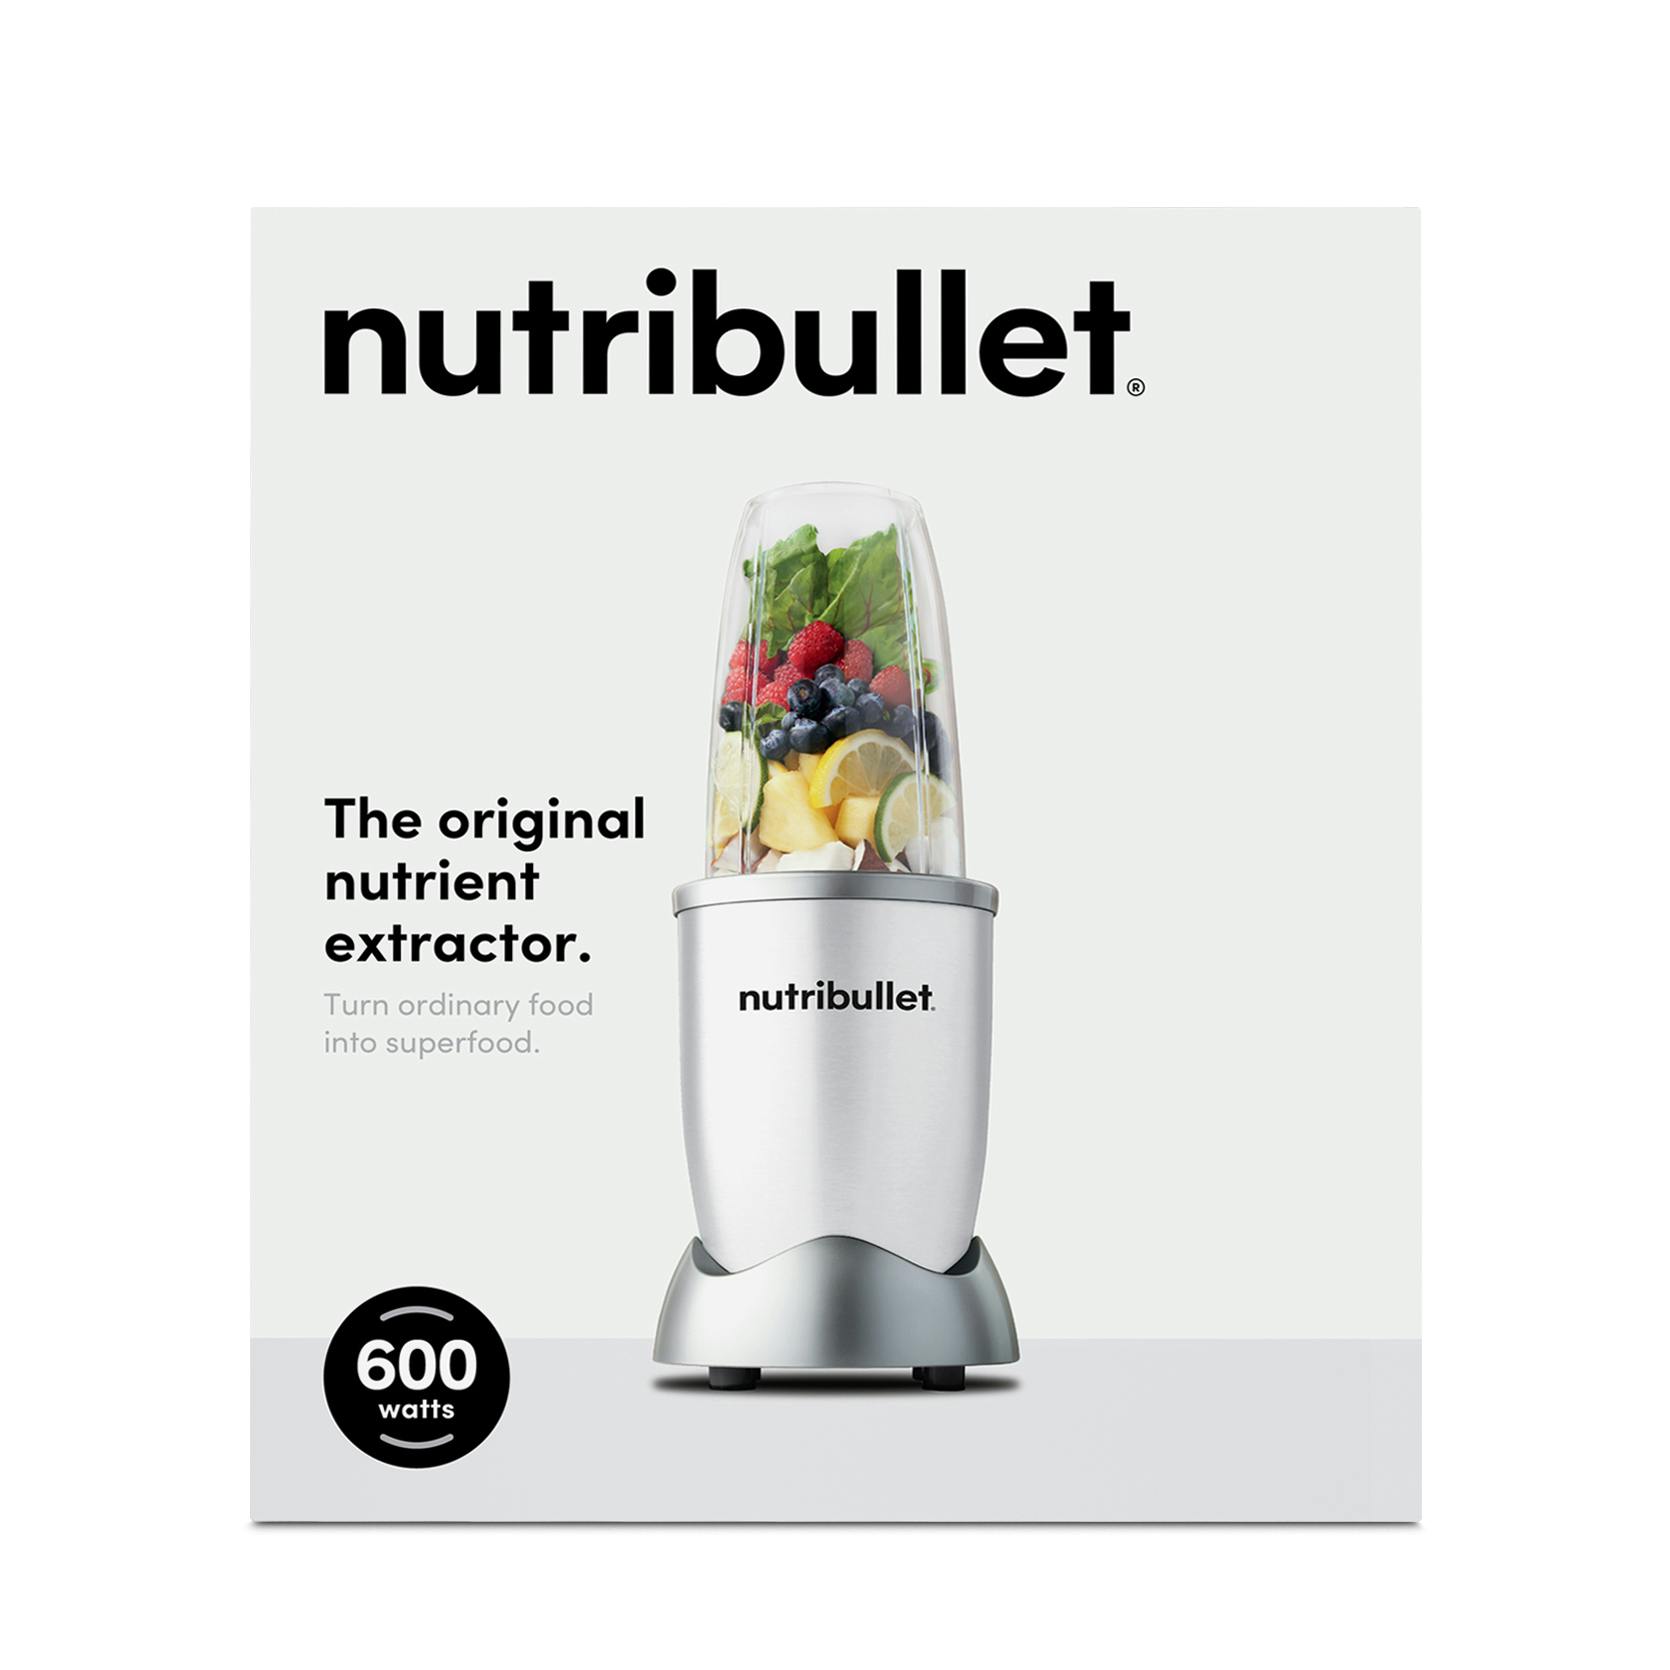 Like New) nutribullet 600 Series - White